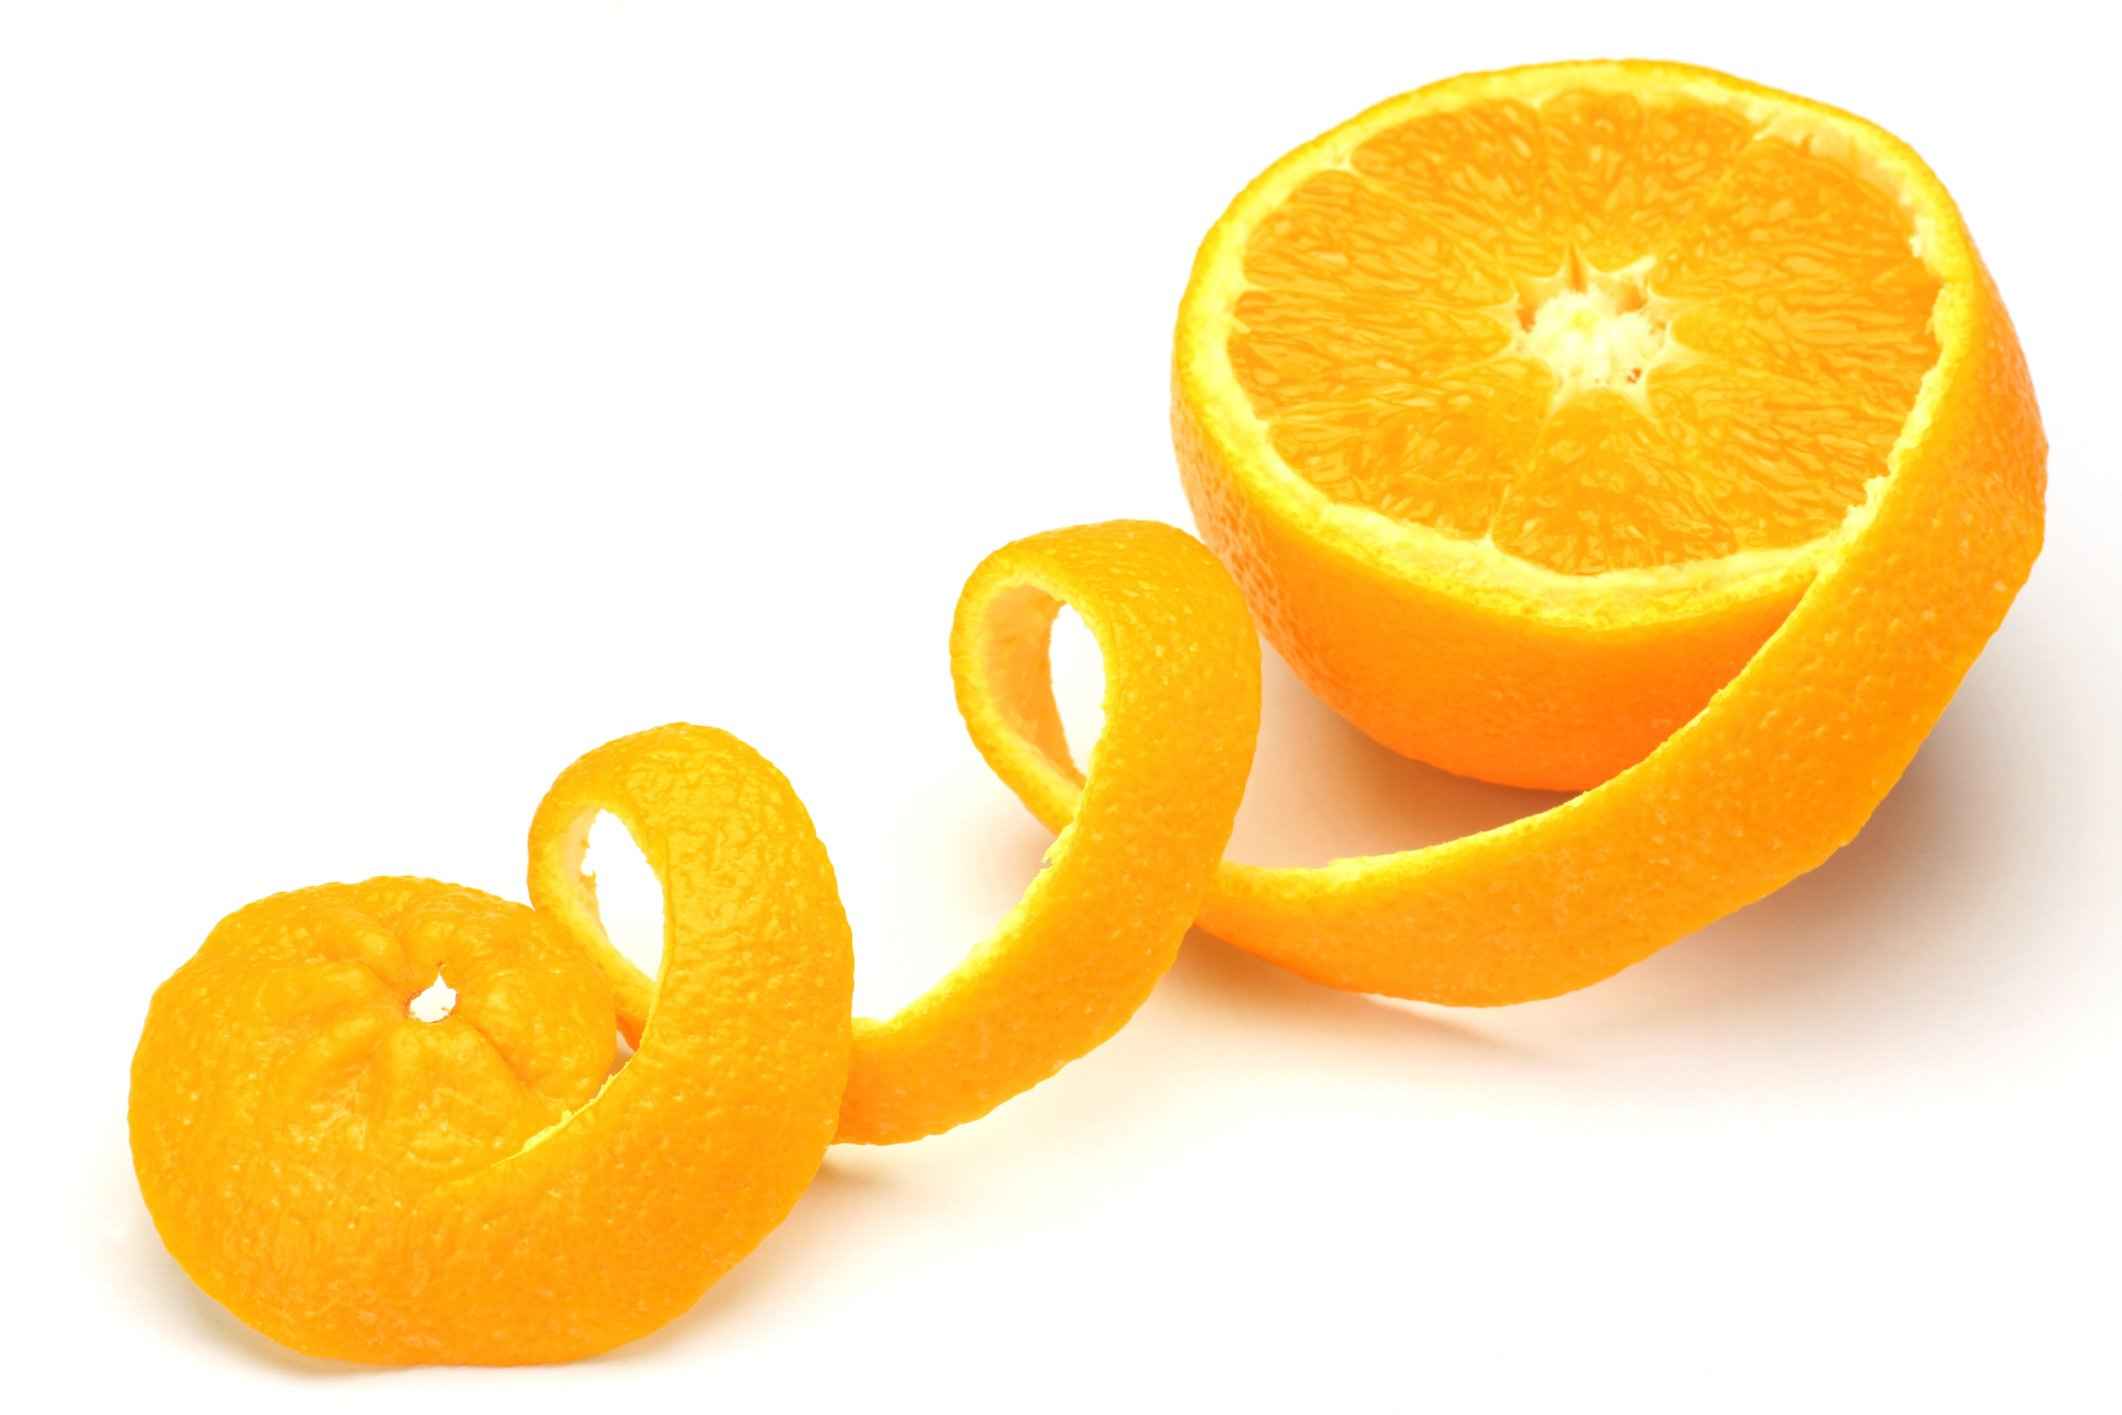  قشر البرتقال للبشرة الدهنية